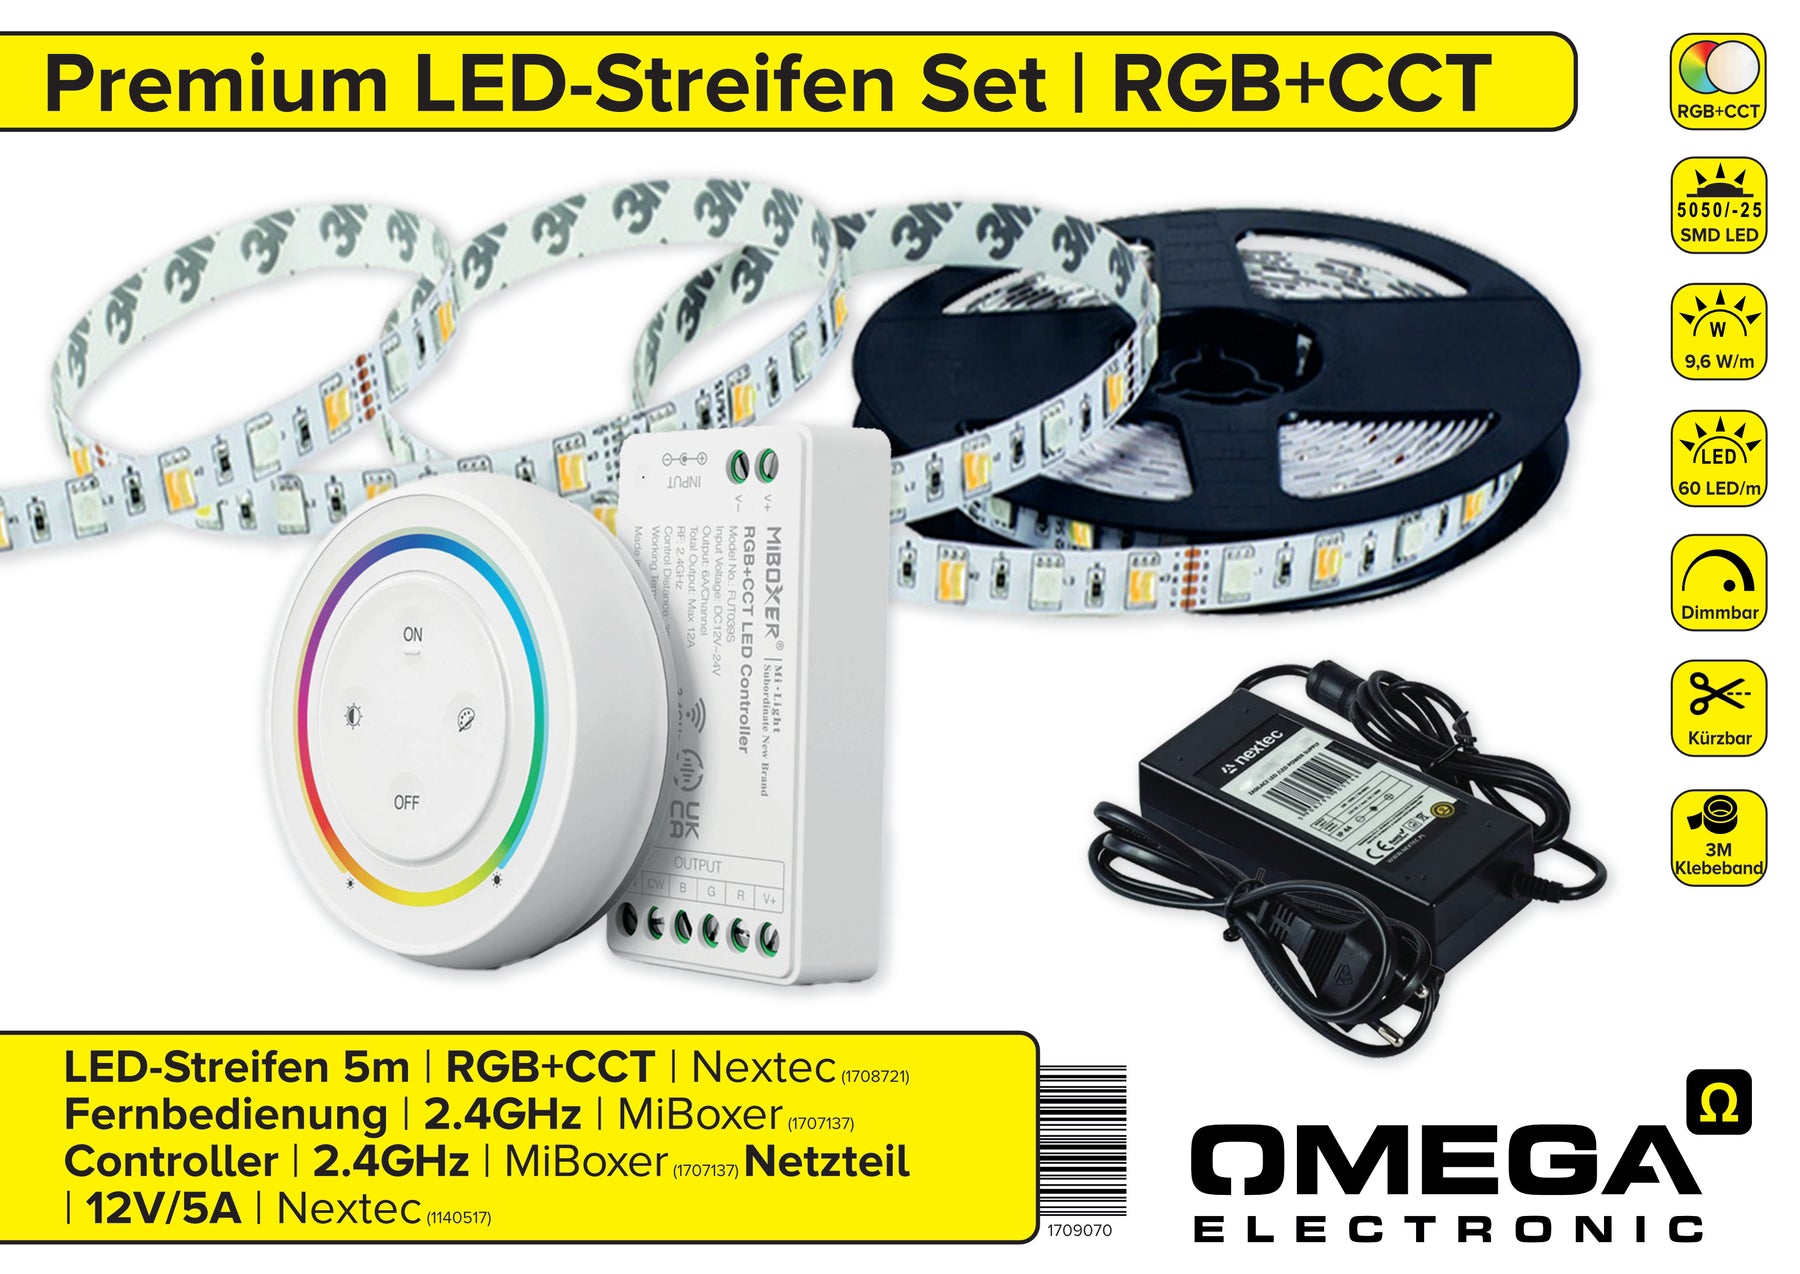 Unsere neuen Omega Premium LED-Streifen Sets jetzt zum Einführungspreis